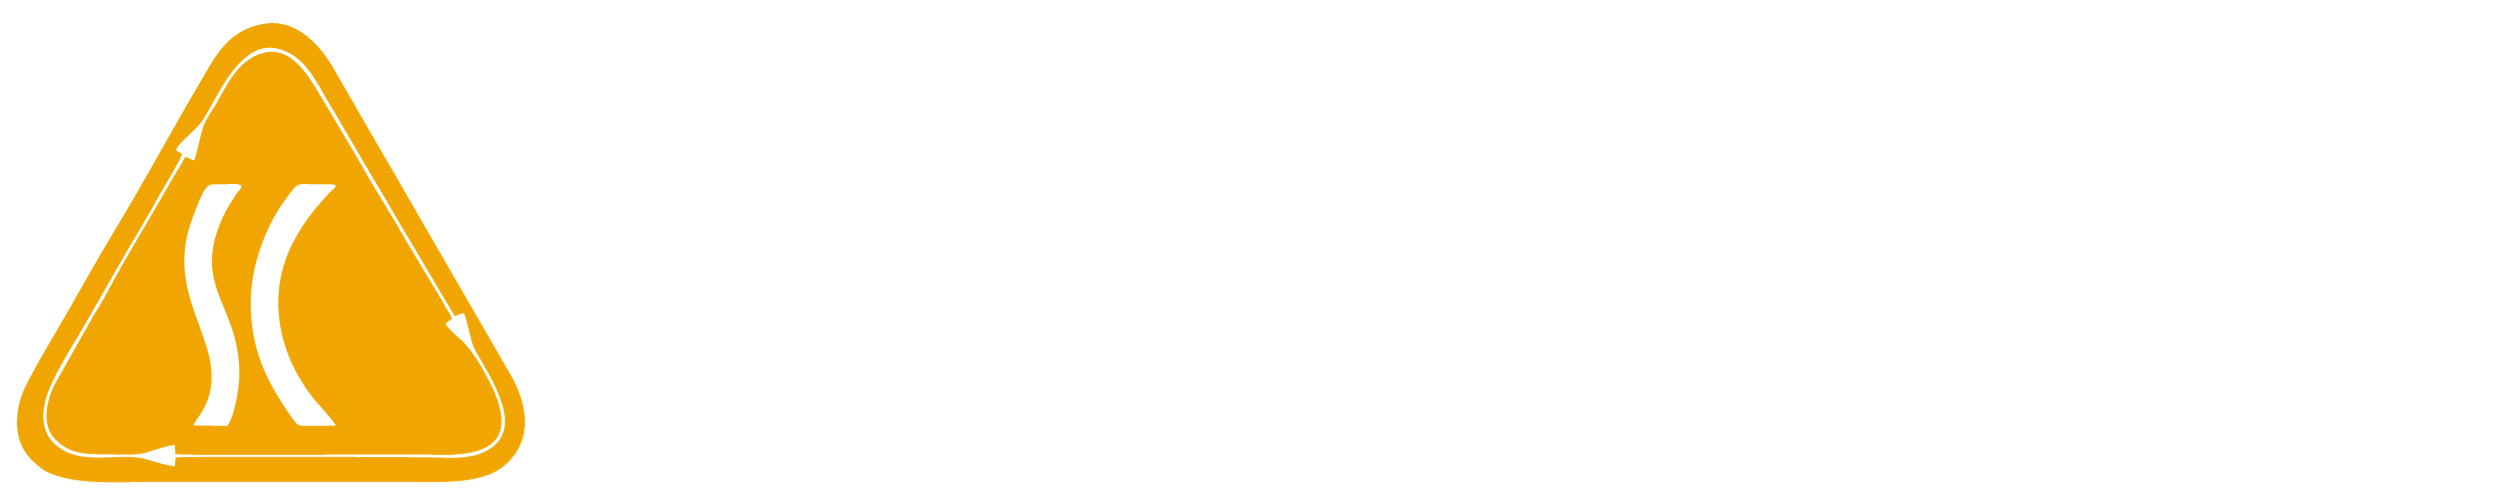 logo Công Ty TNHH SCOM